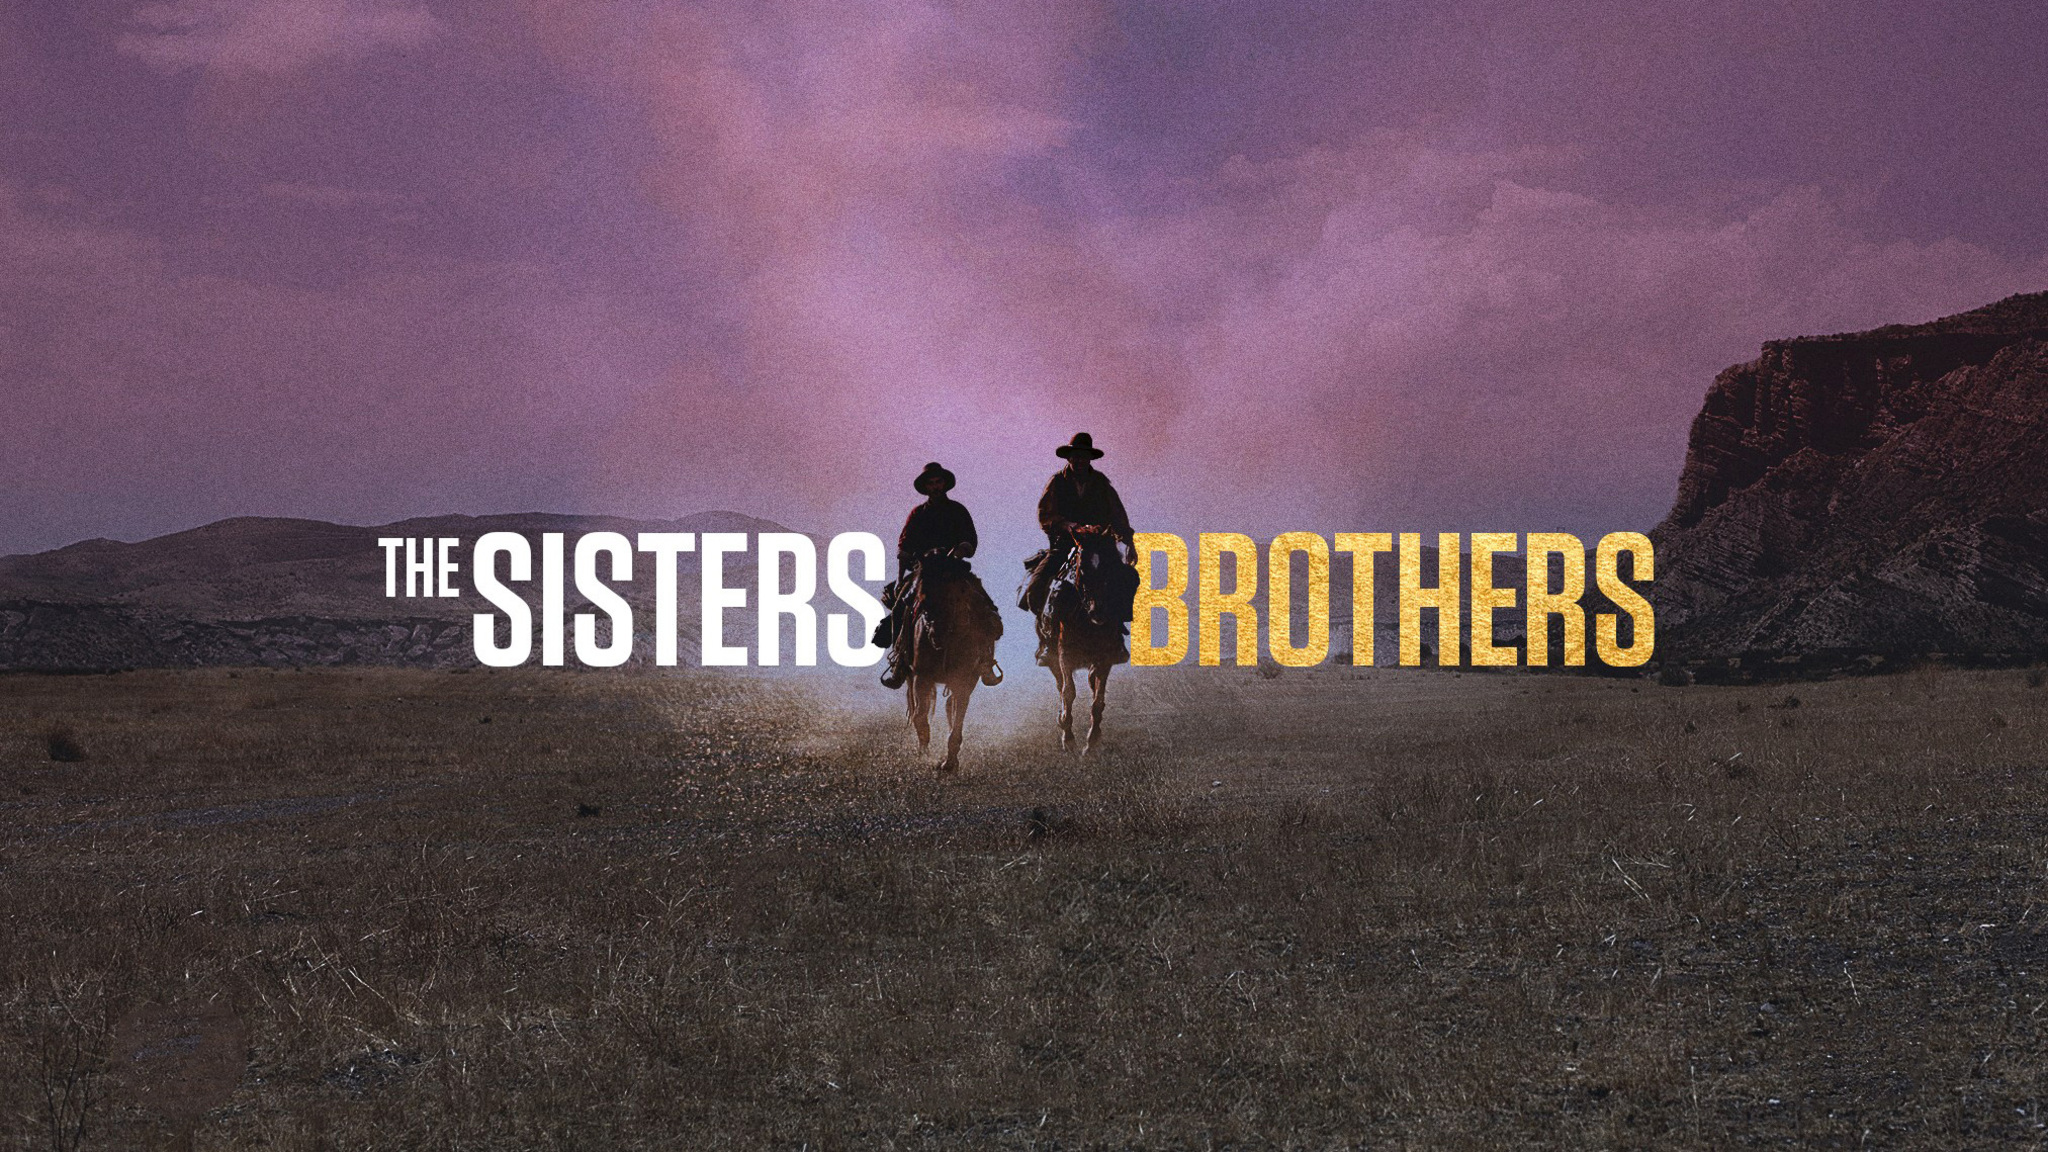 Brother sister live. Братья Систерс. Братья Систерс 2018 Постер. Хоакин Феникс братья Систерс.